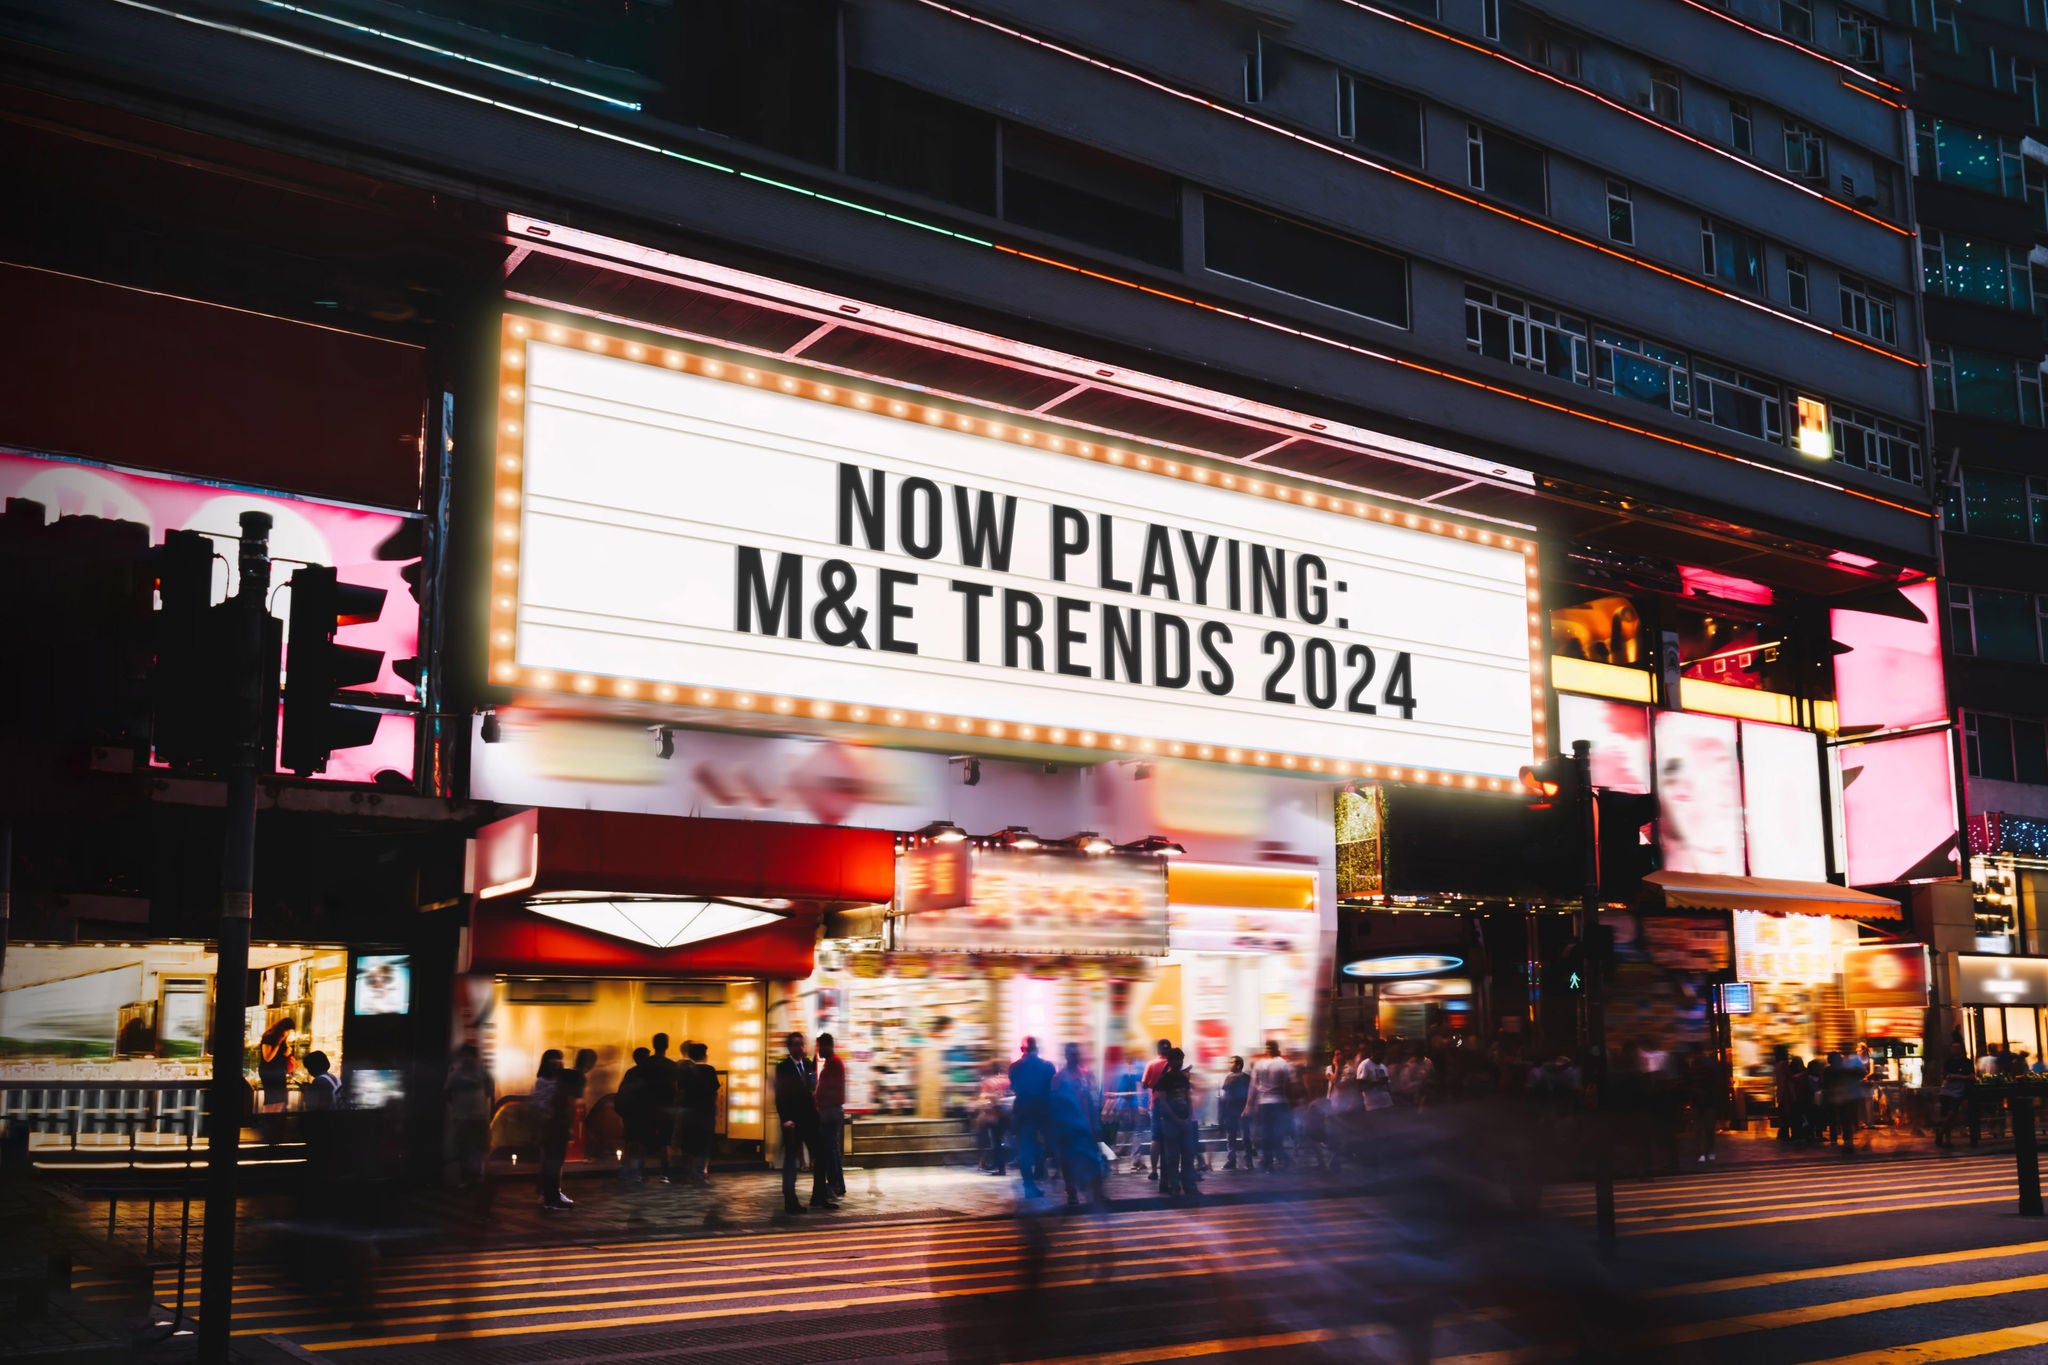 M&E trends 2024